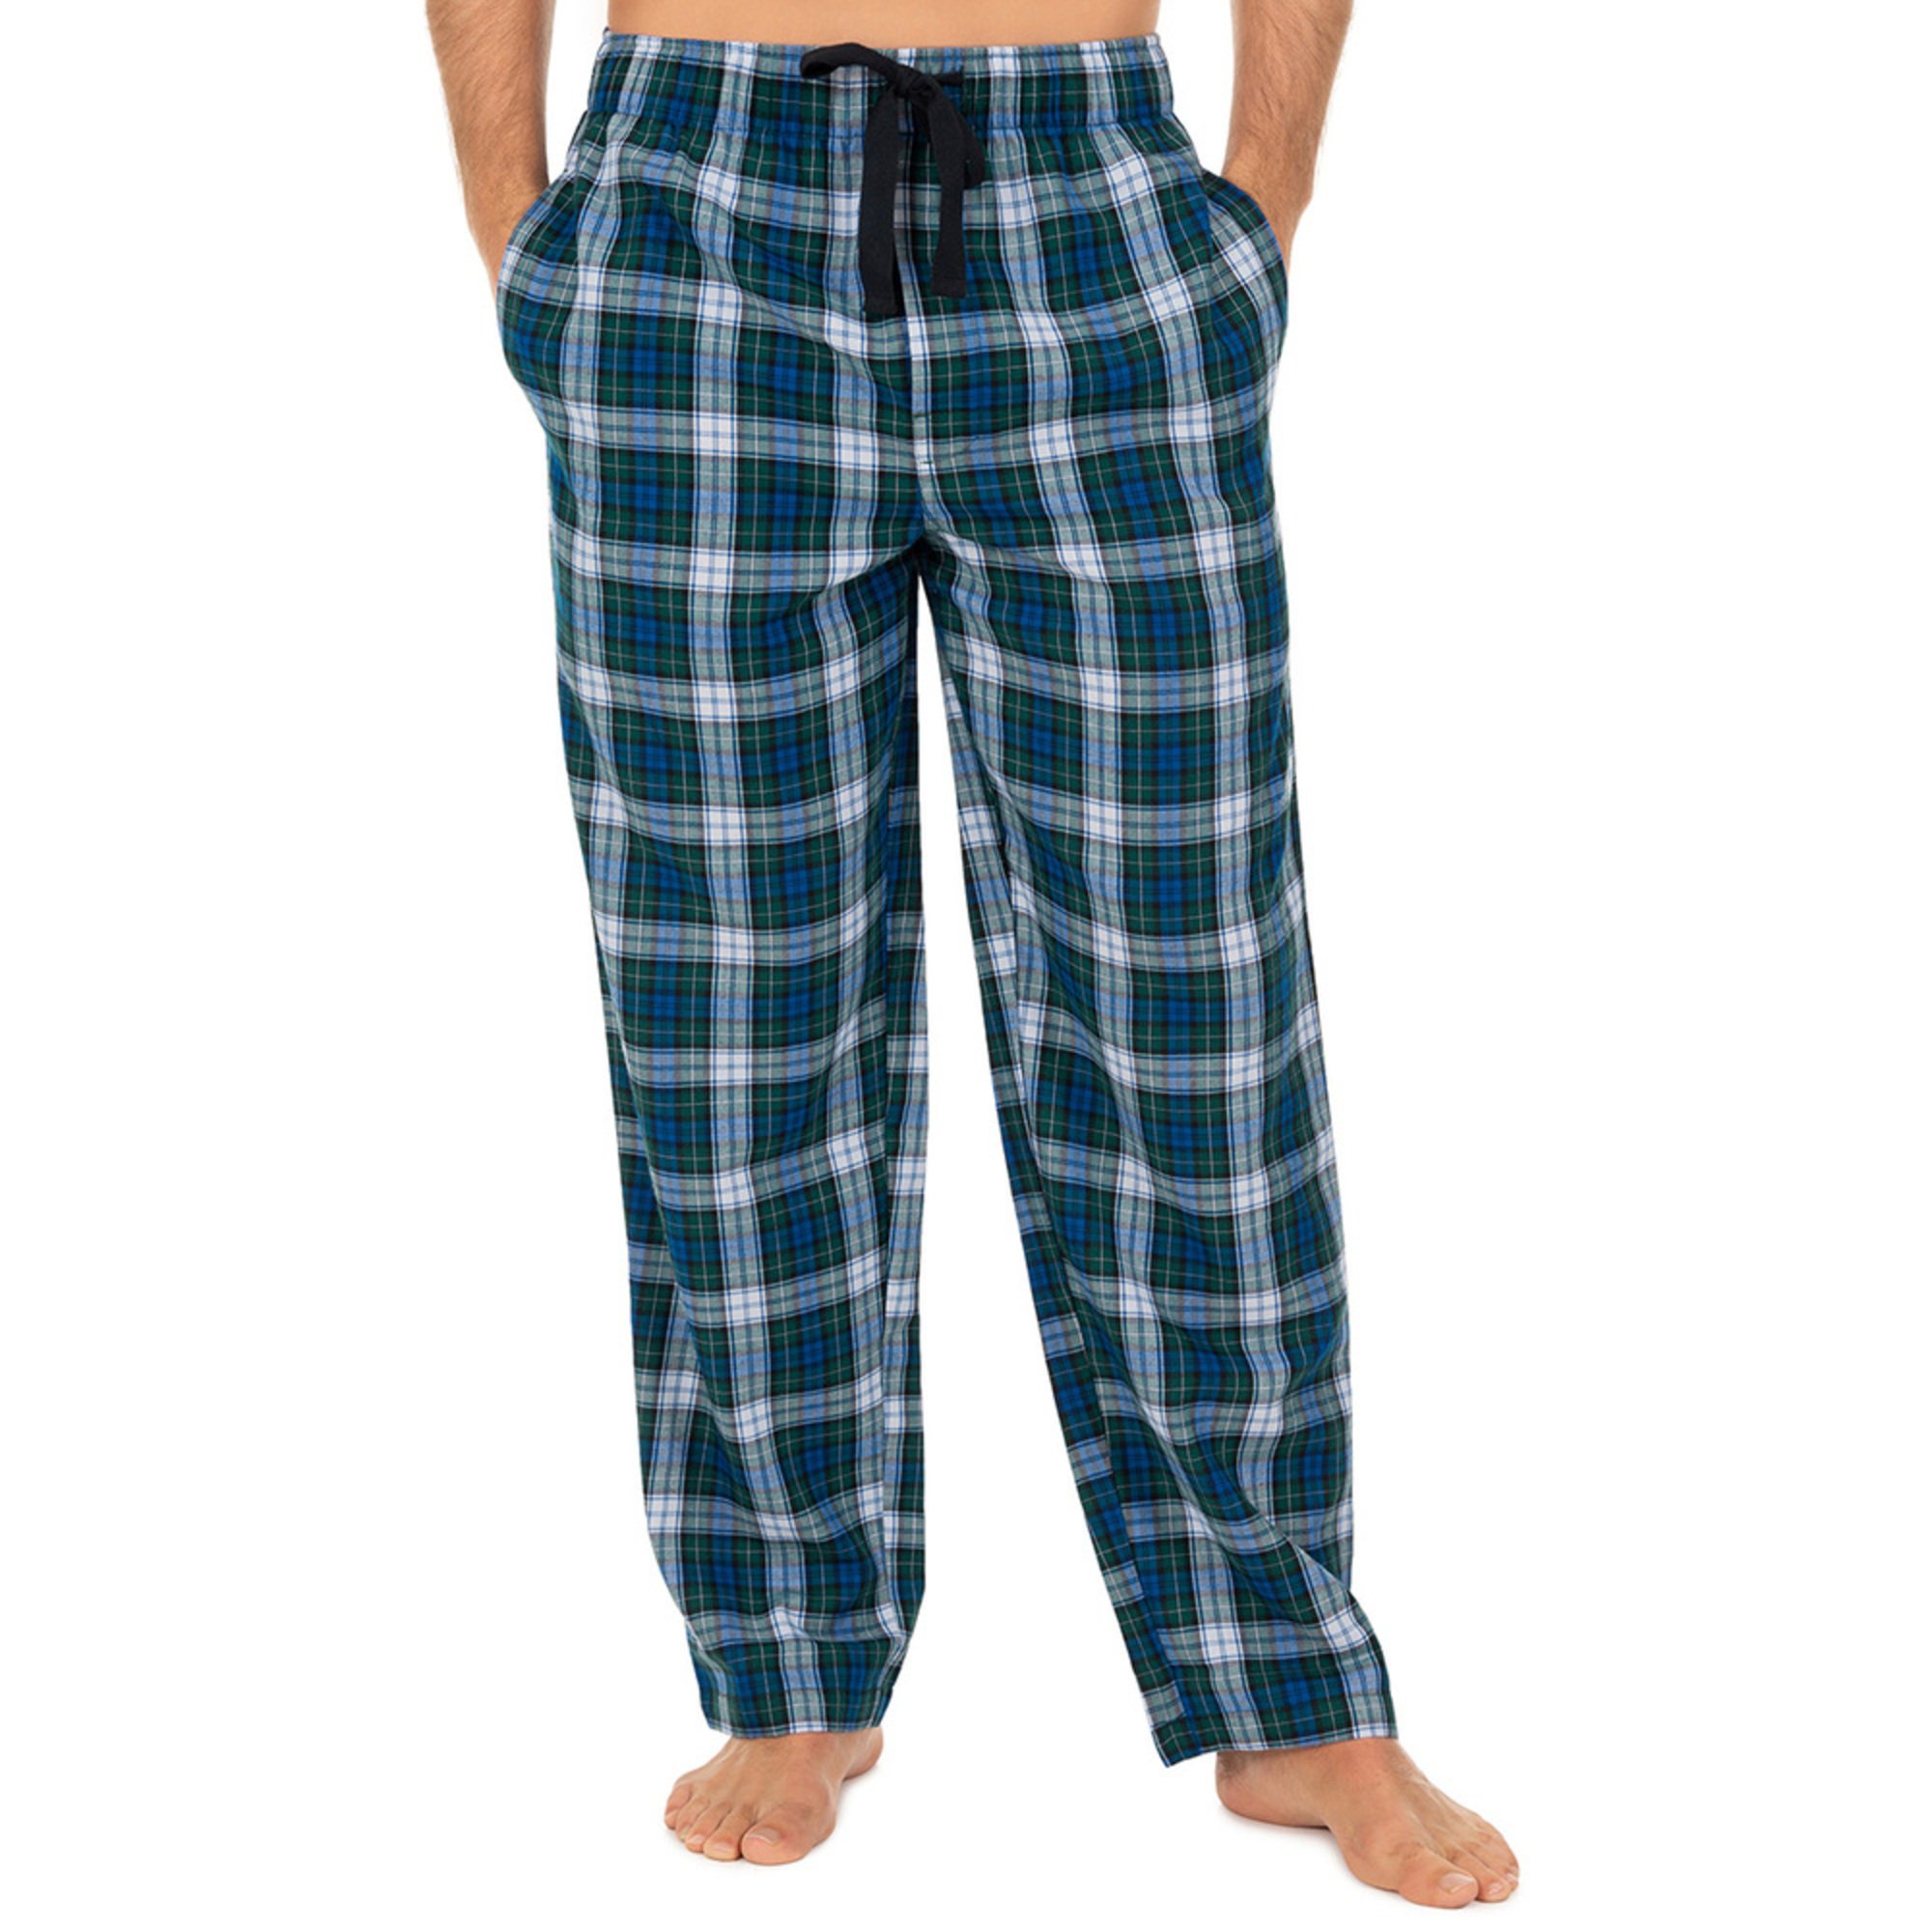 Izod Men's Poly Rayon Pants | Men's Loungewear & Sleepwear | Apparel ...